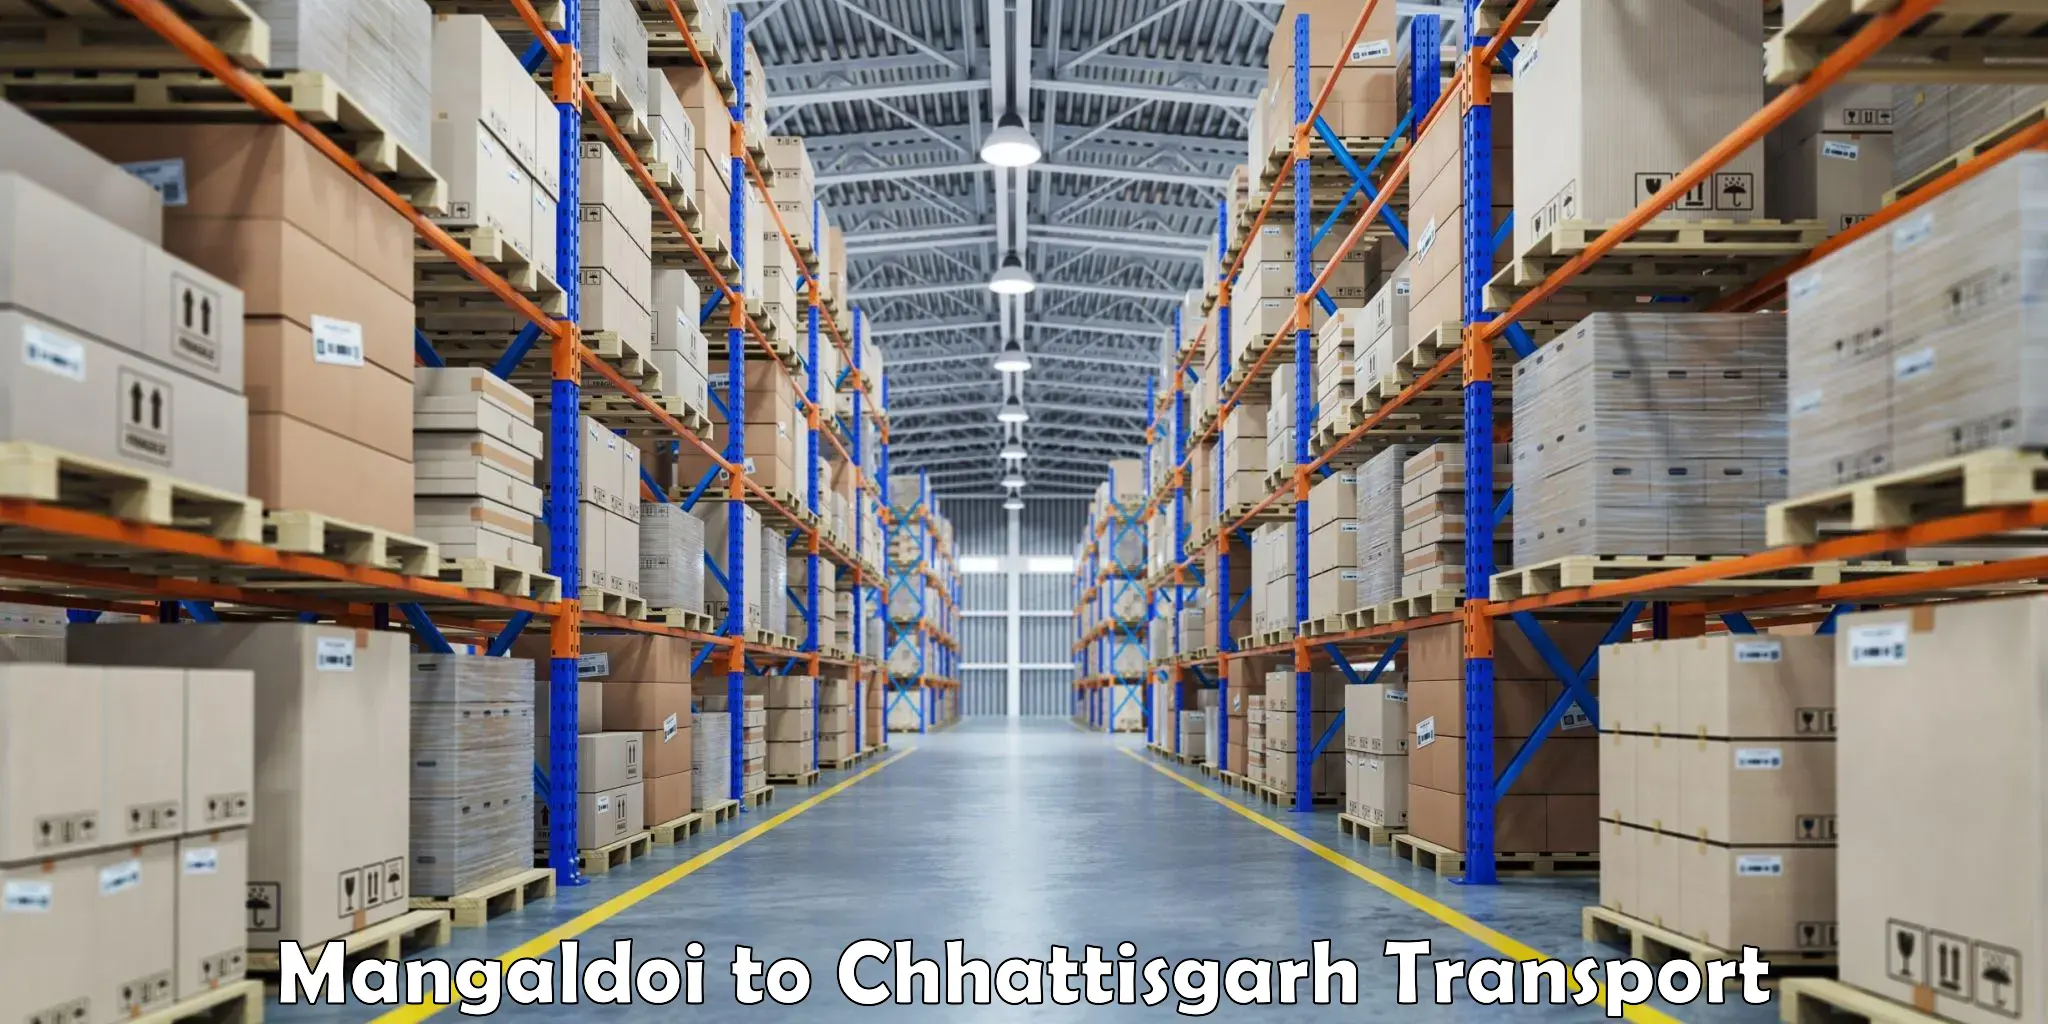 Delivery service Mangaldoi to Chhattisgarh